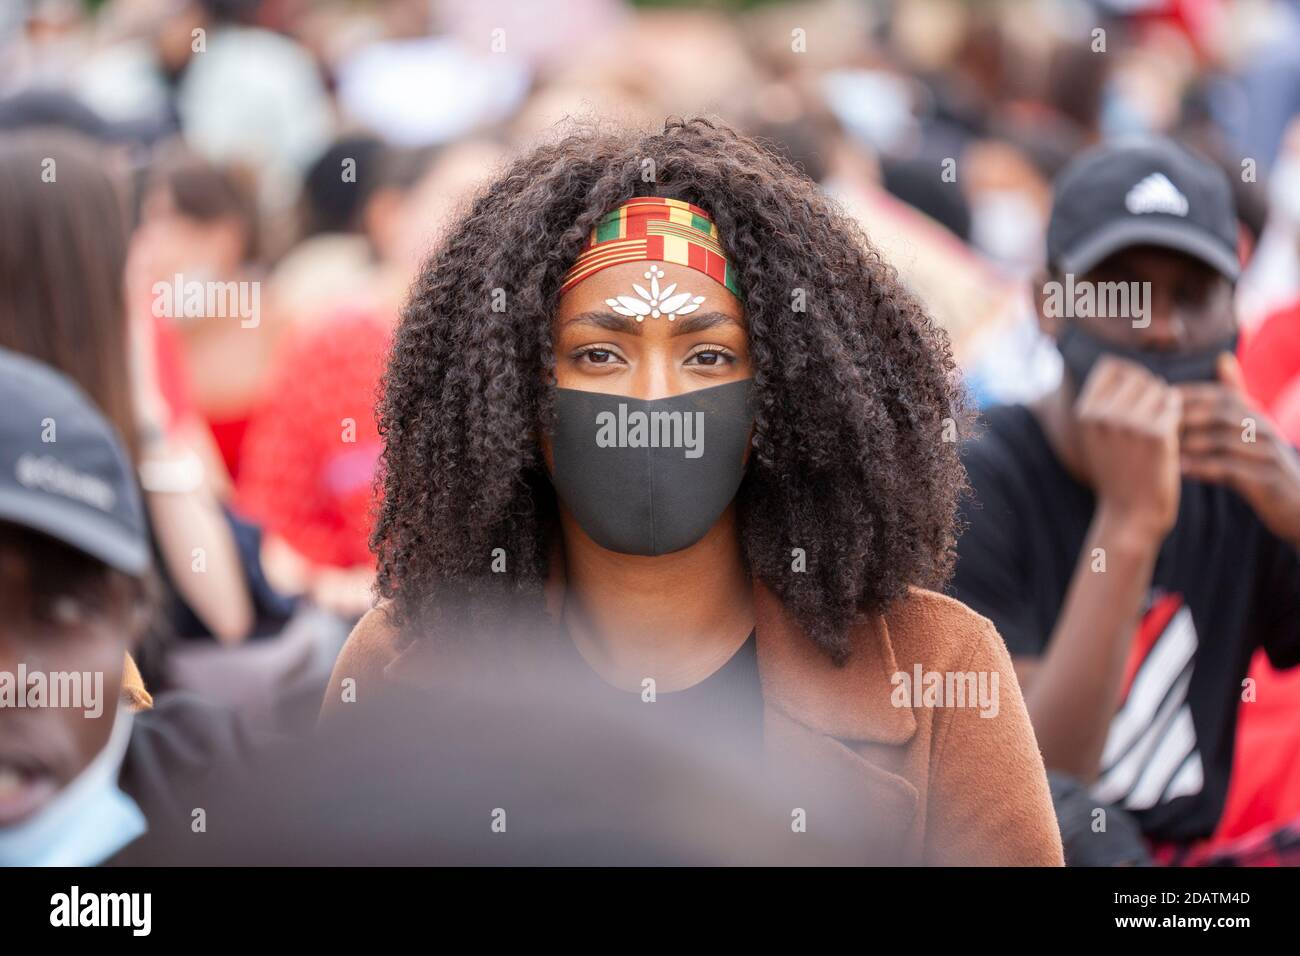 Une jeune femme porte un masque, des bijoux pour le visage et un bandeau à l'occasion d'une marche de protestation Black Lives Matter. Banque D'Images